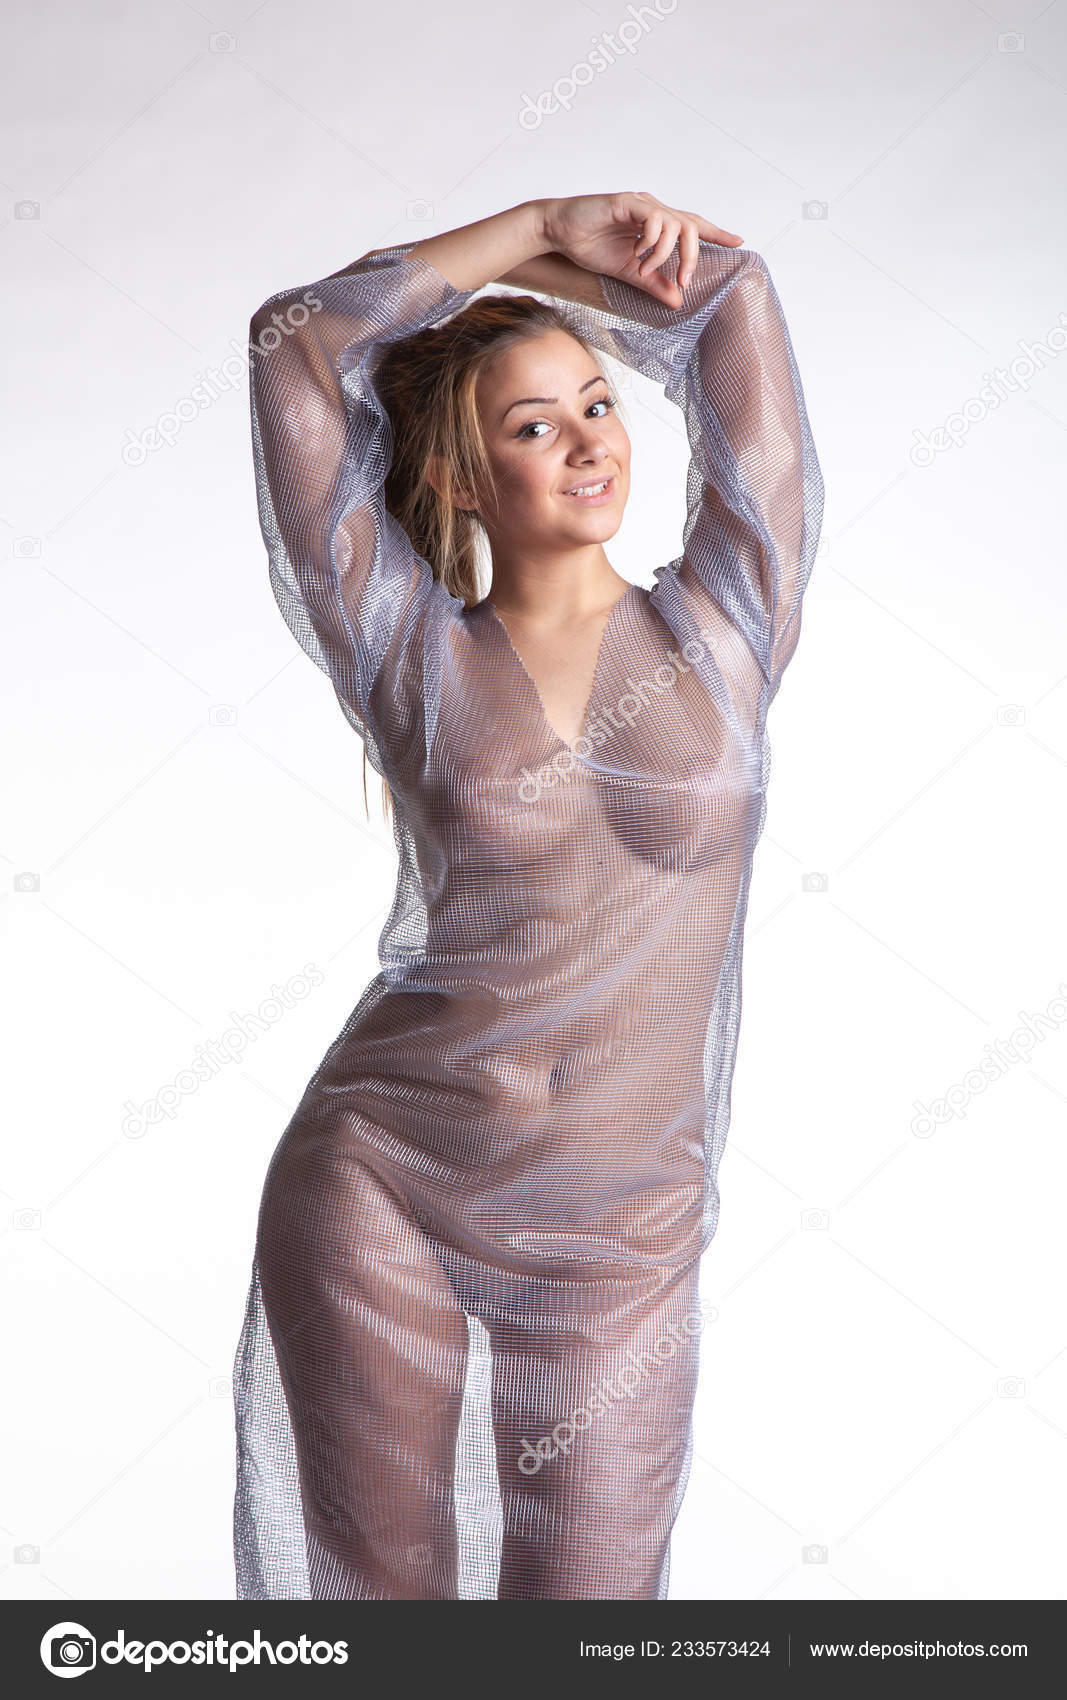 https://st4n.depositphotos.com/10086424/23357/i/1600/depositphotos_233573424-stock-photo-young-beautiful-girl-posing-nude.jpg